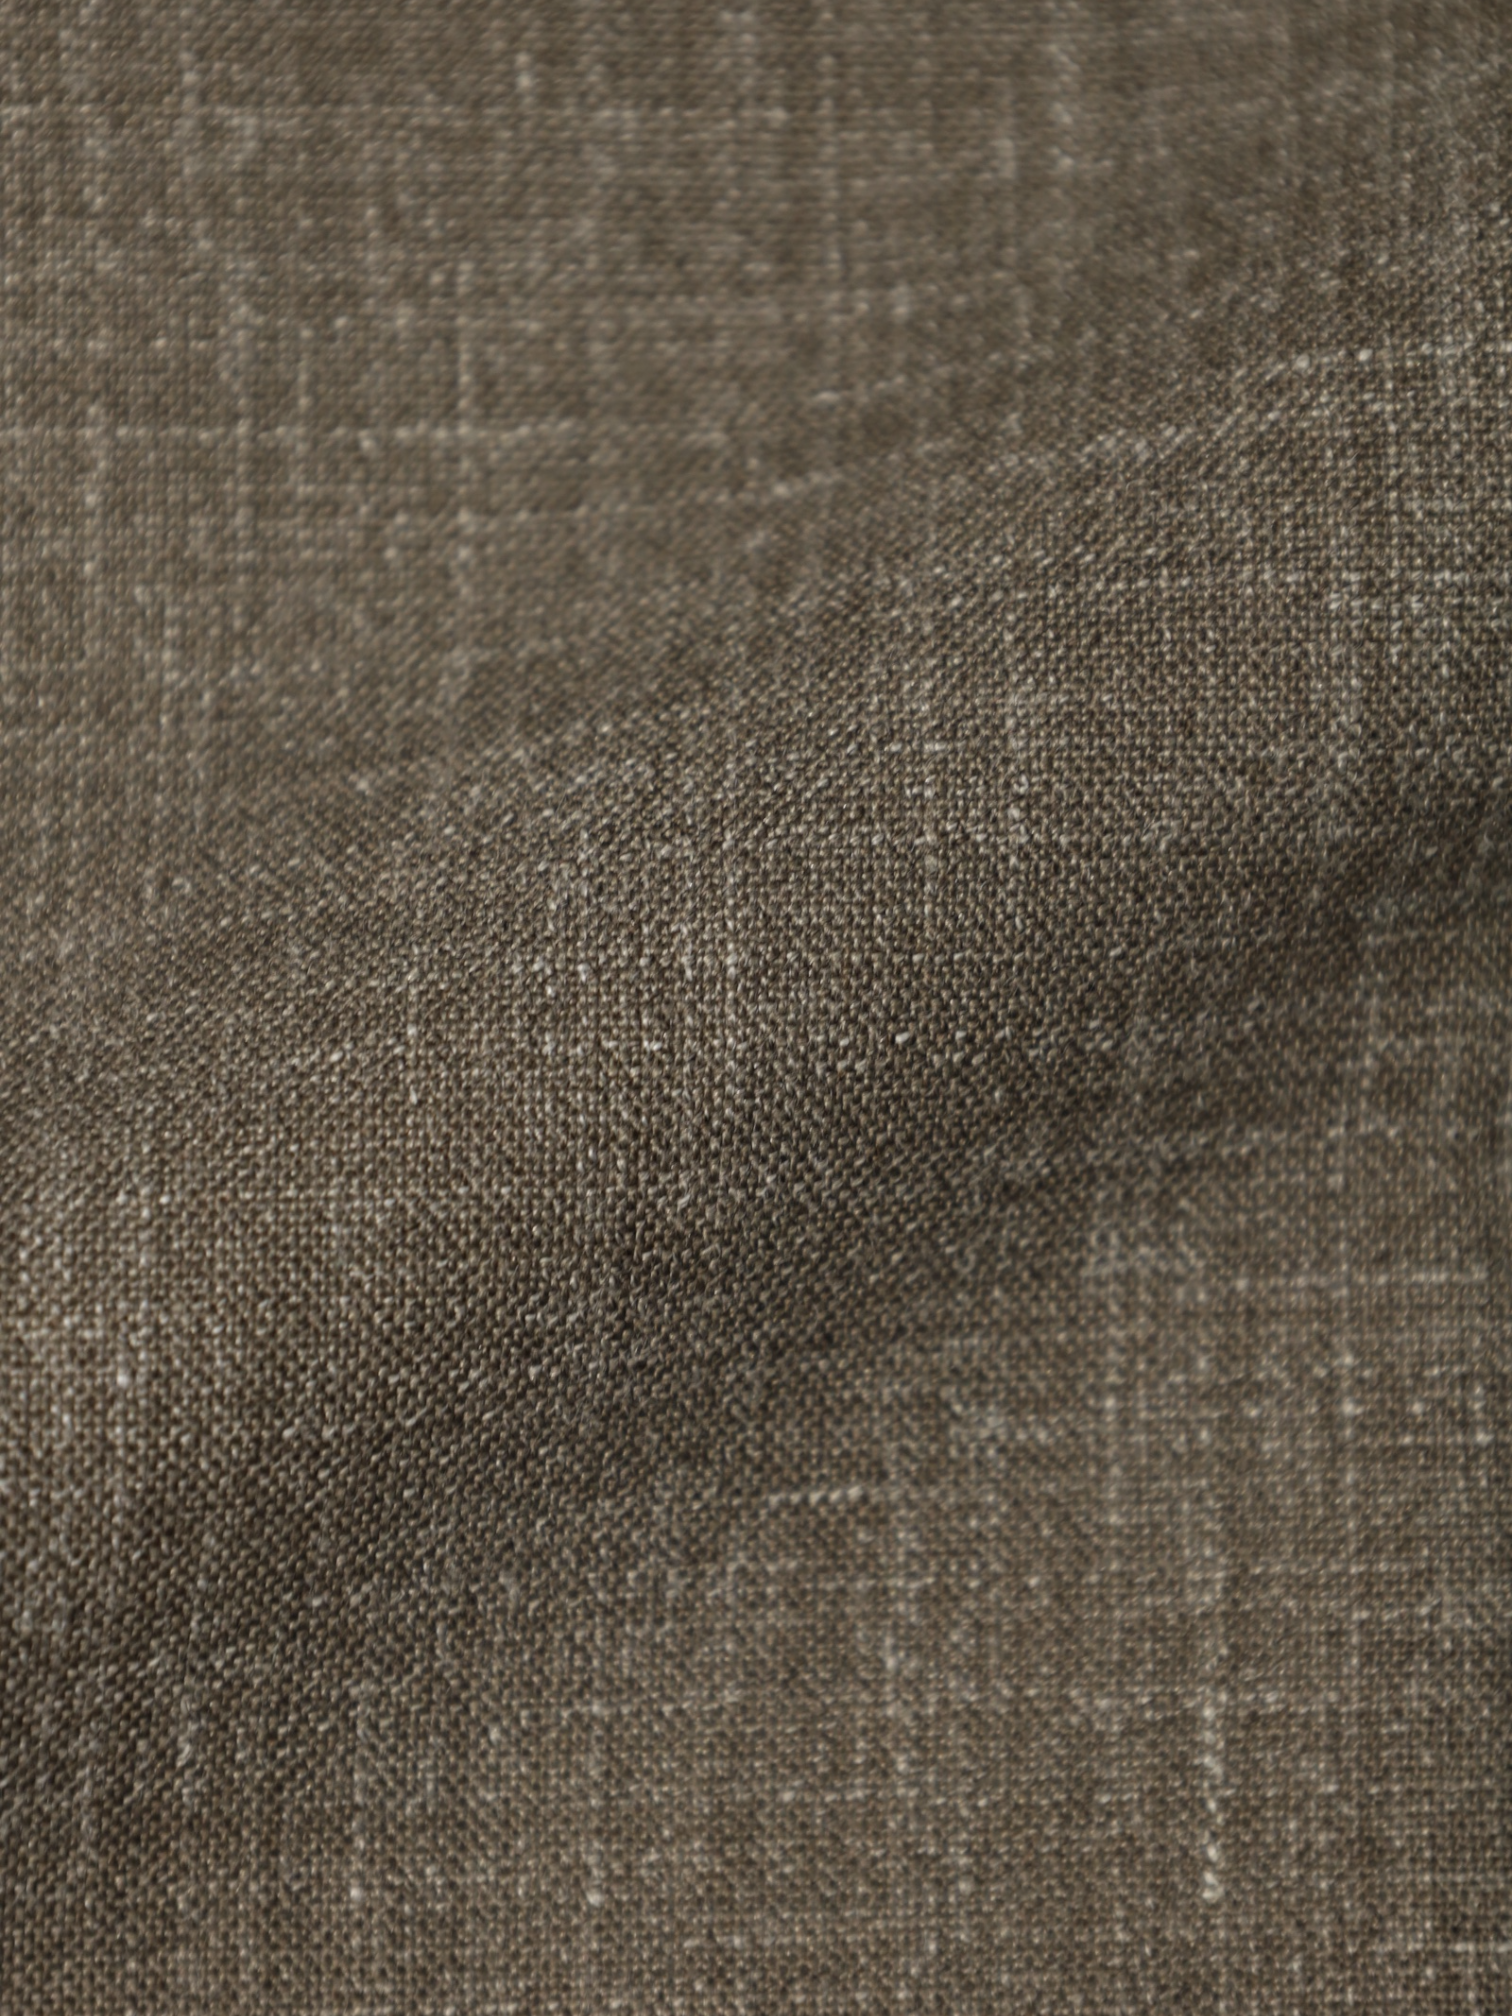 Orazio Luciano Brown Wool, Silk & Linen Melange Jacket